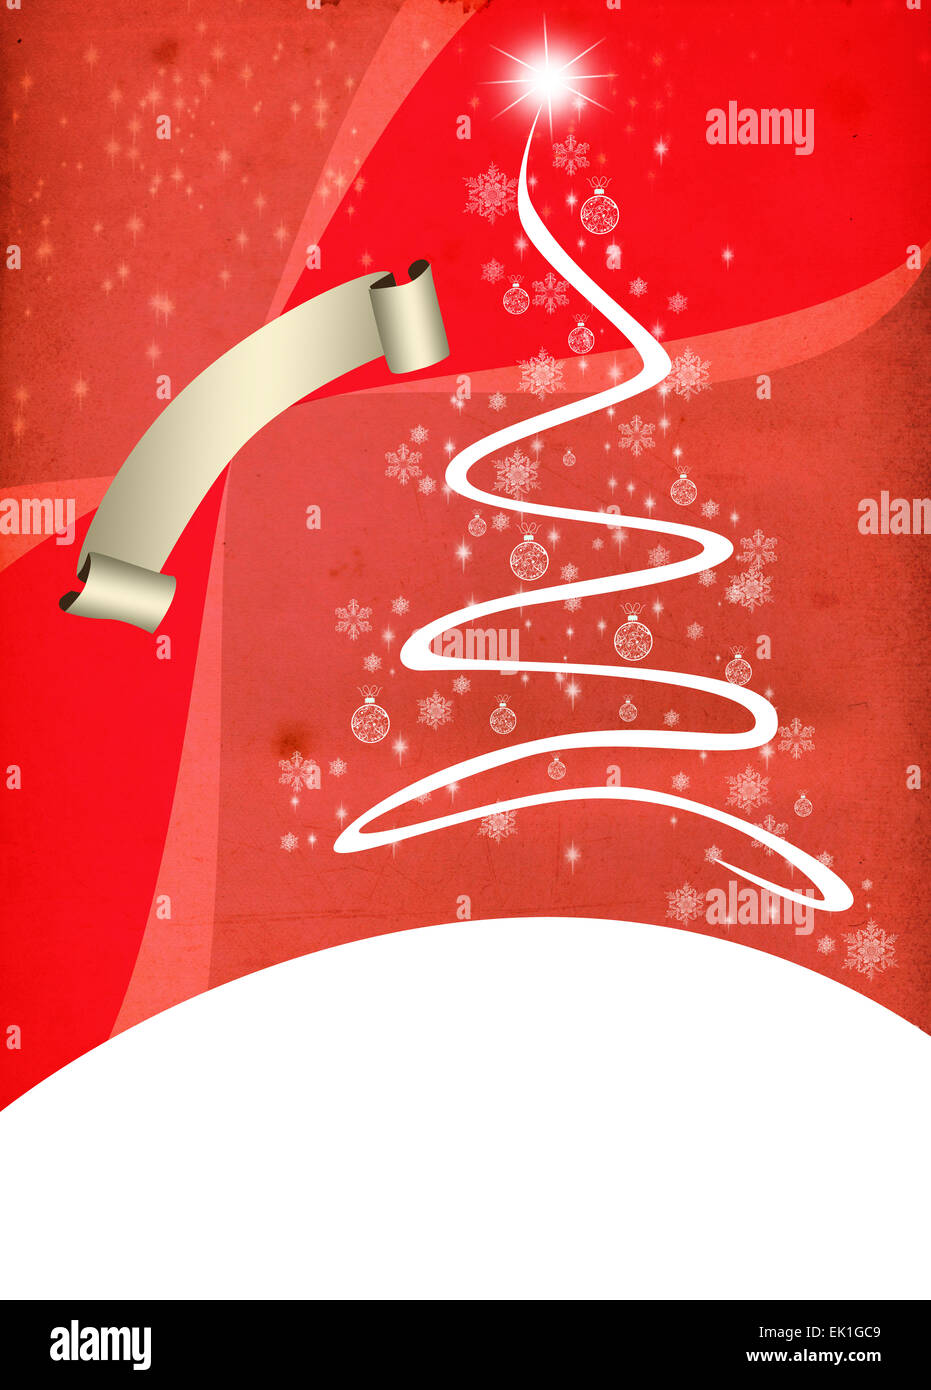 Frohe Weihnachten Dekoration Poster Oder Flyer Hintergrund Mit Raum Stockfotografie Alamy